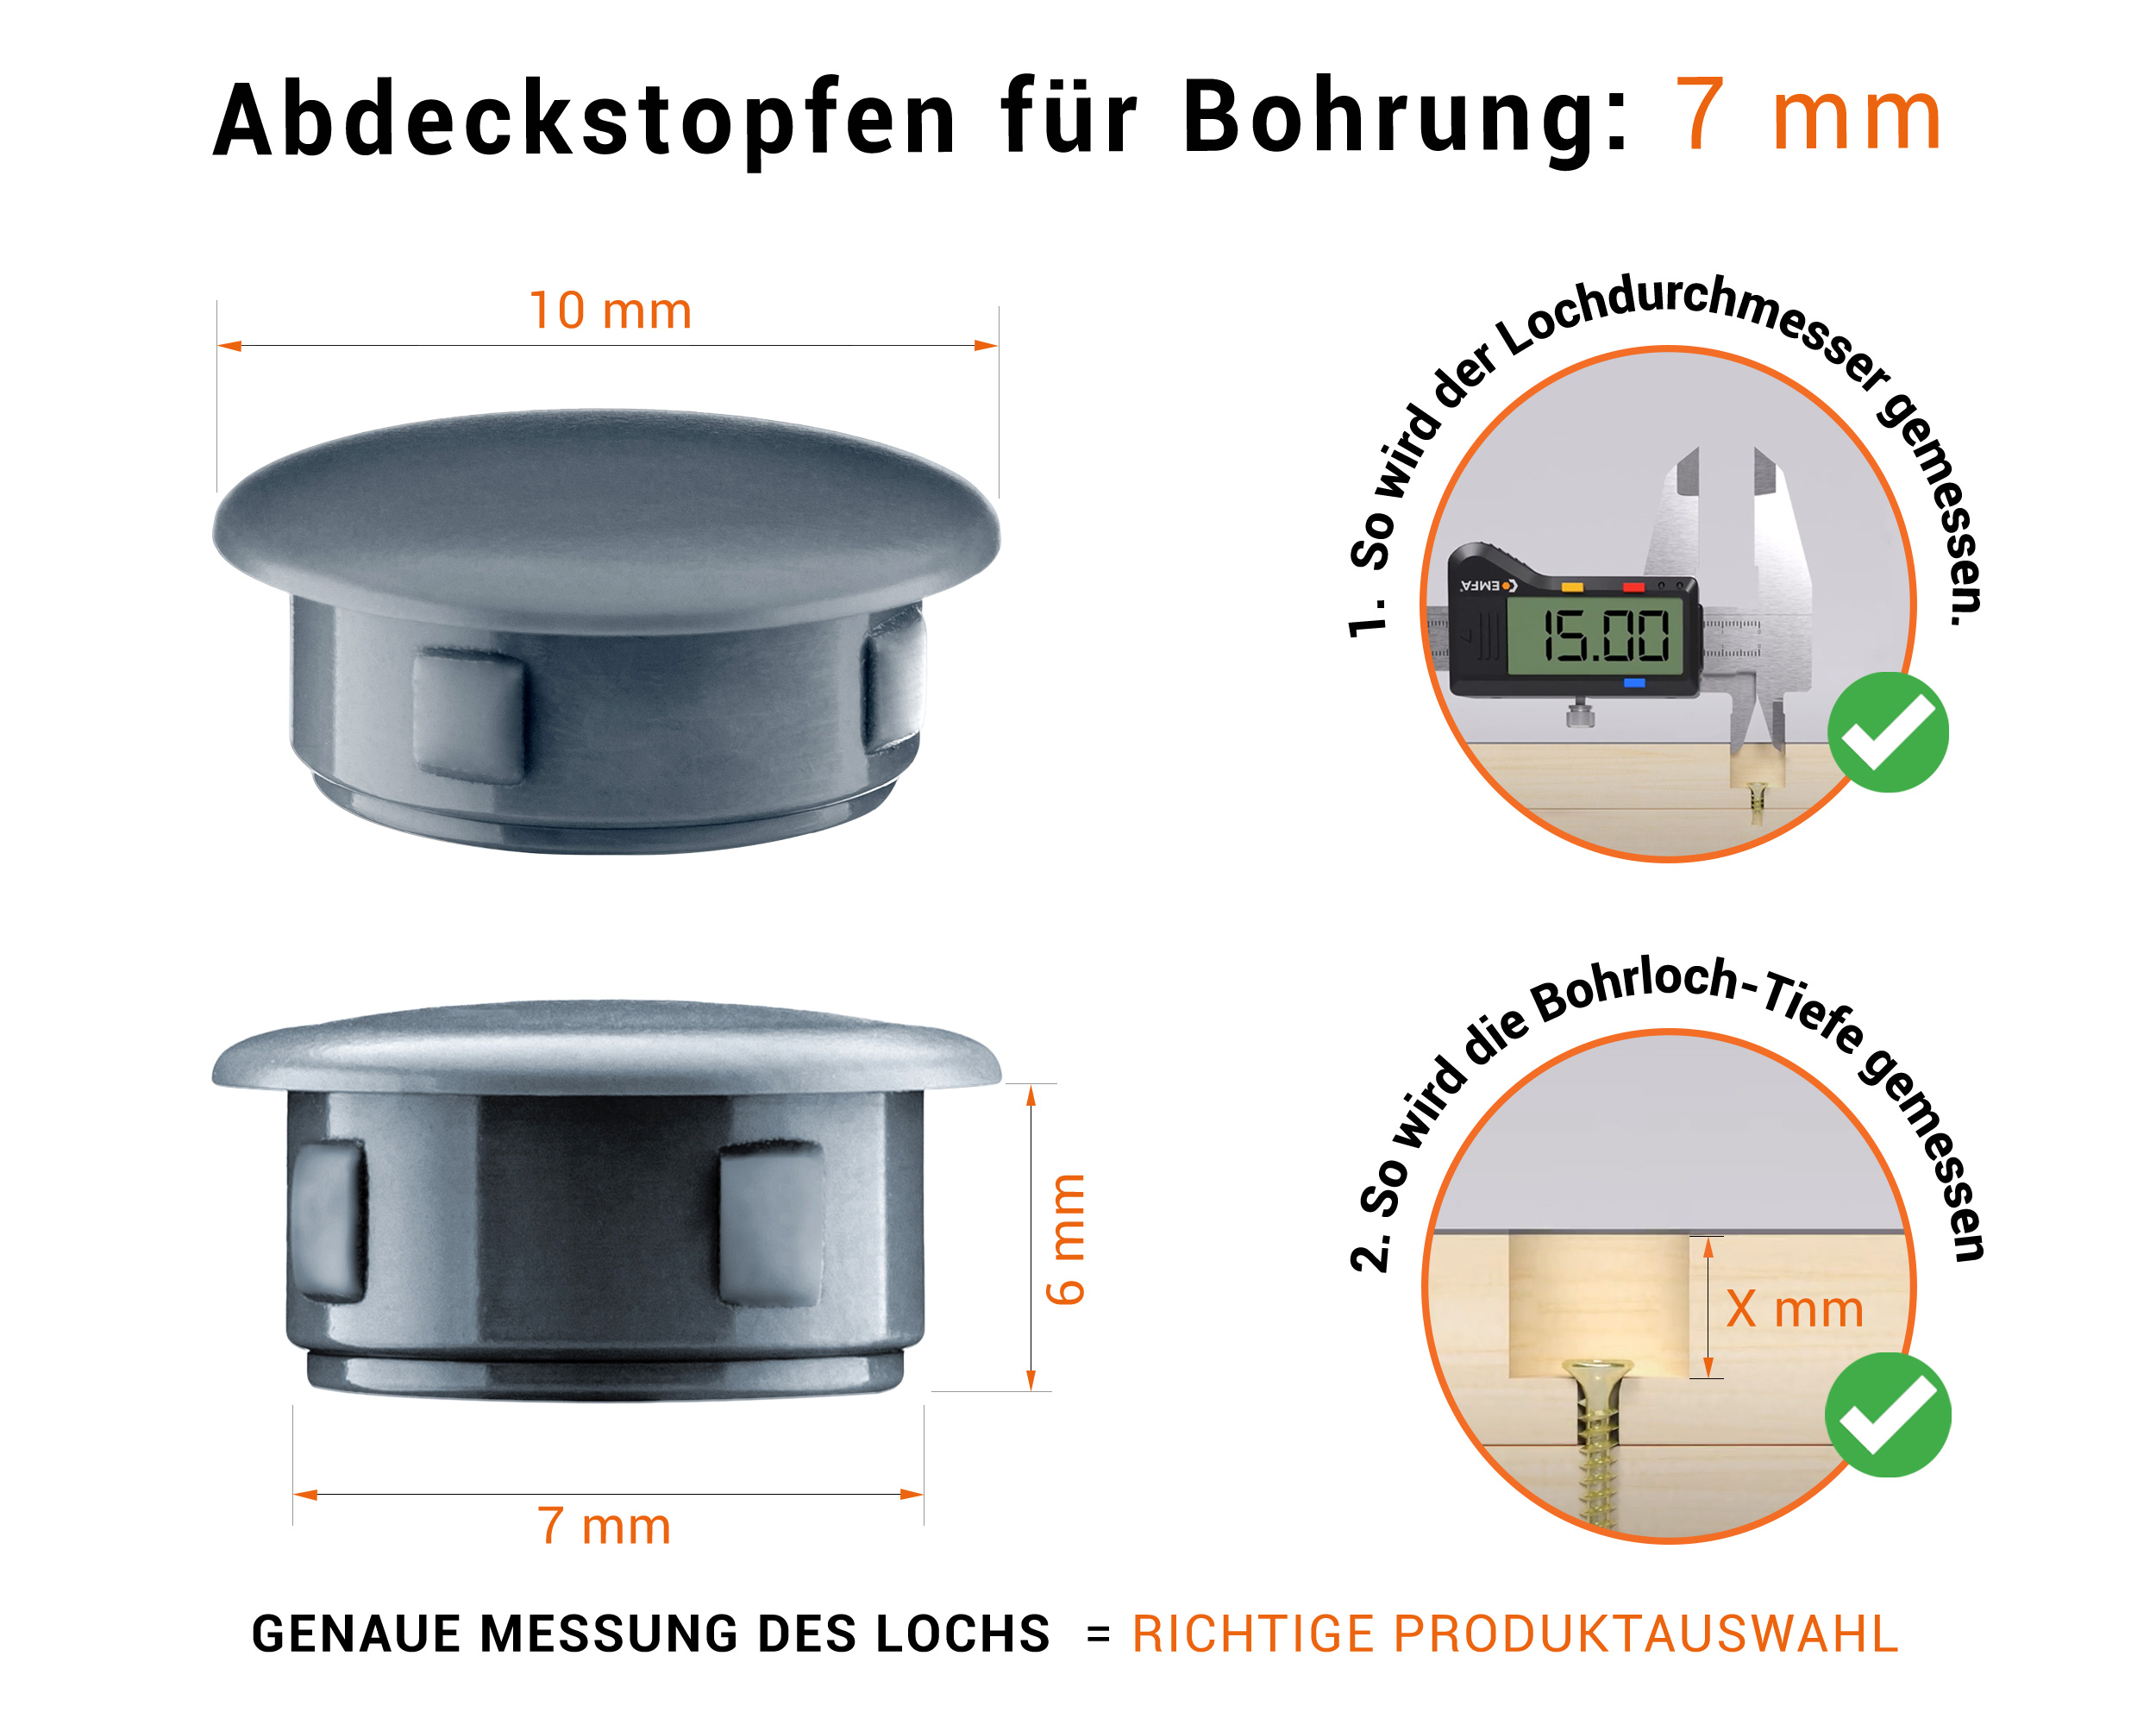 Anthrazite Blindstopfen aus Kunststoff für Bohrung 7 mm mm mit technischen Abmessungen und Anleitung für korrekte Messung